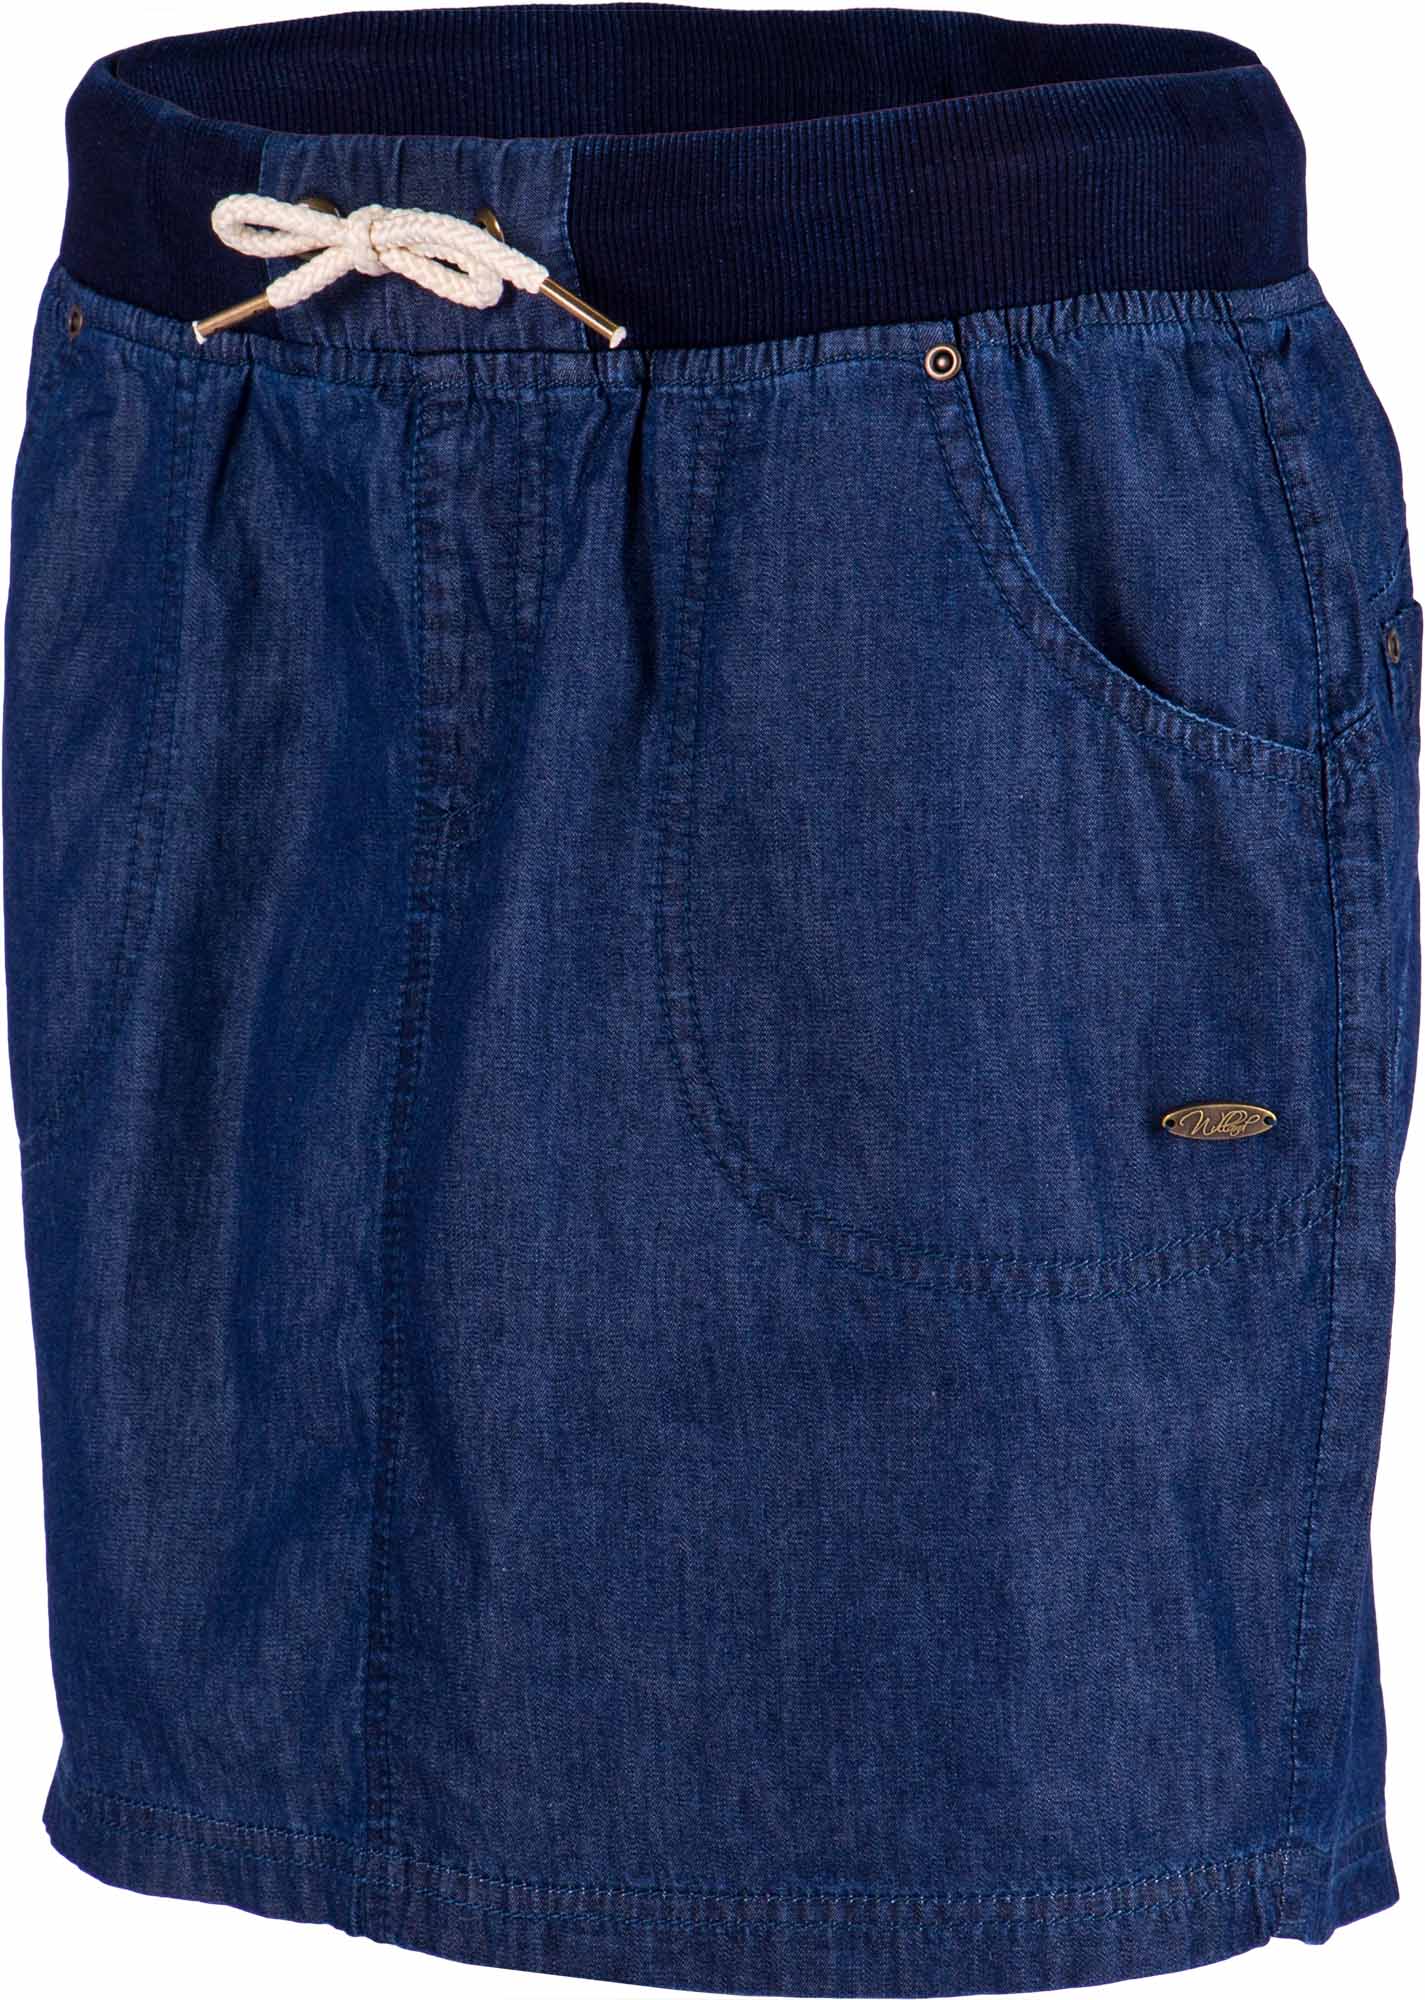 Dámska sukňa s džínsovým vzhľadom